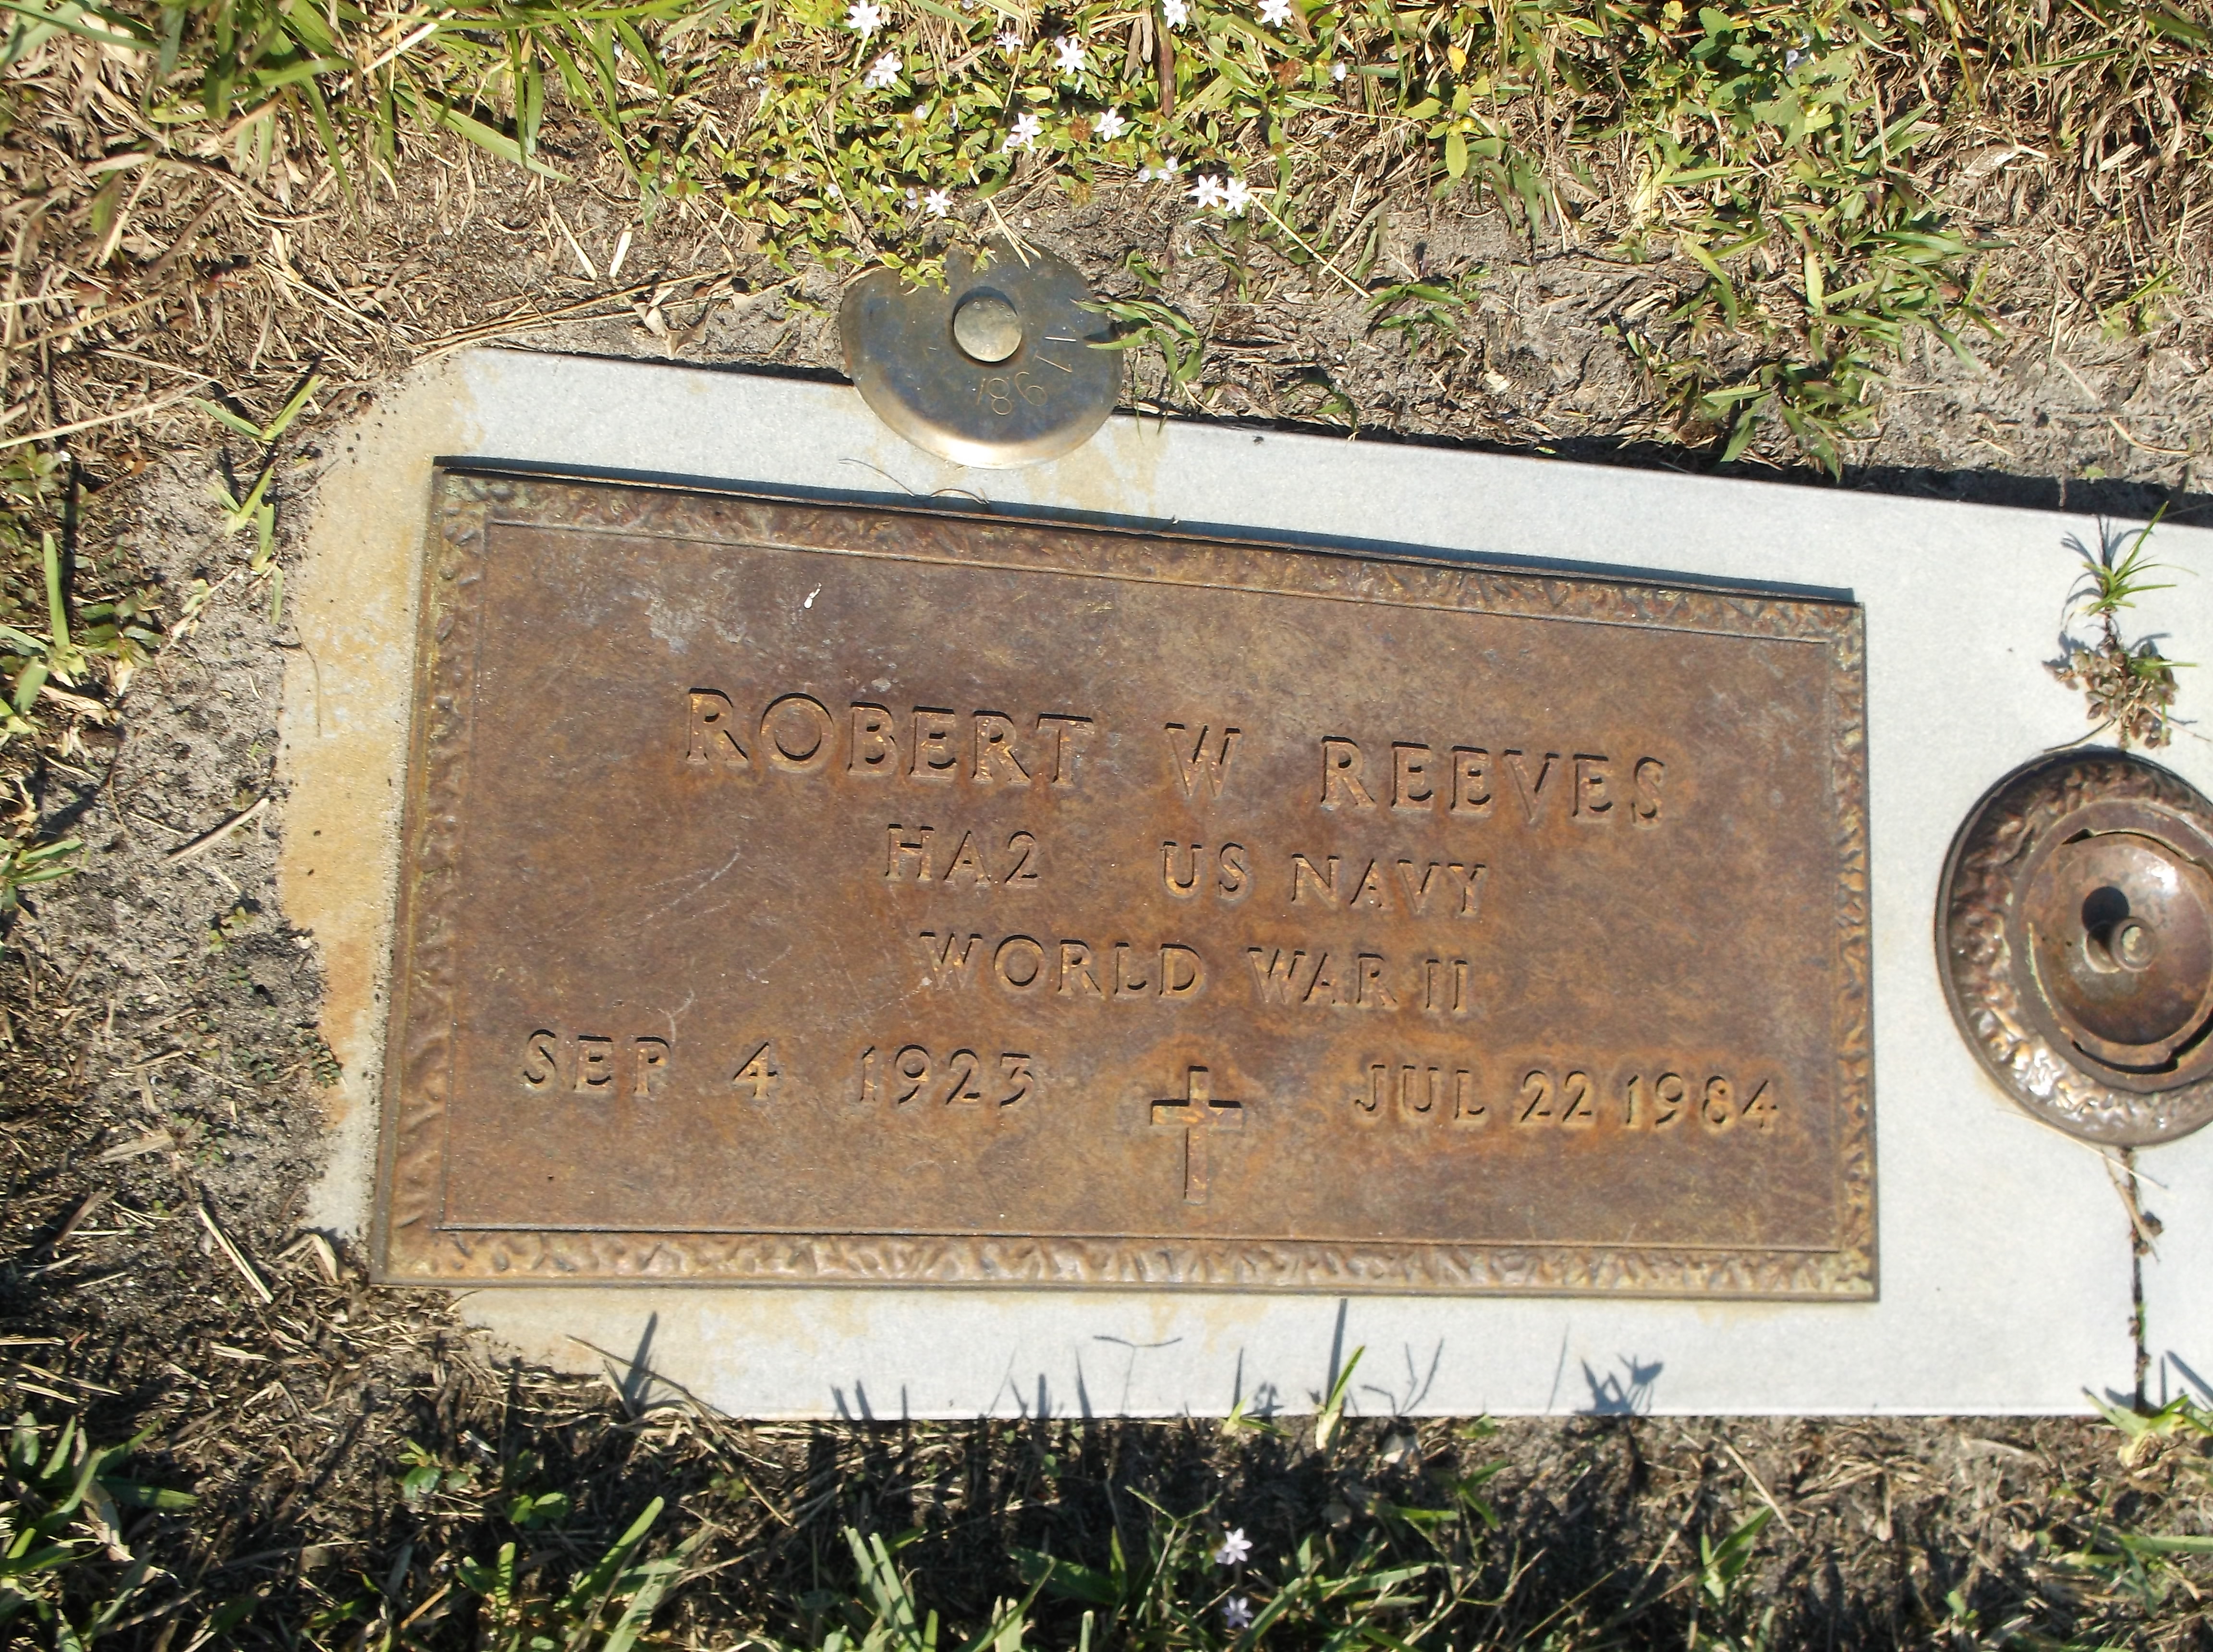 Robert W Reeves